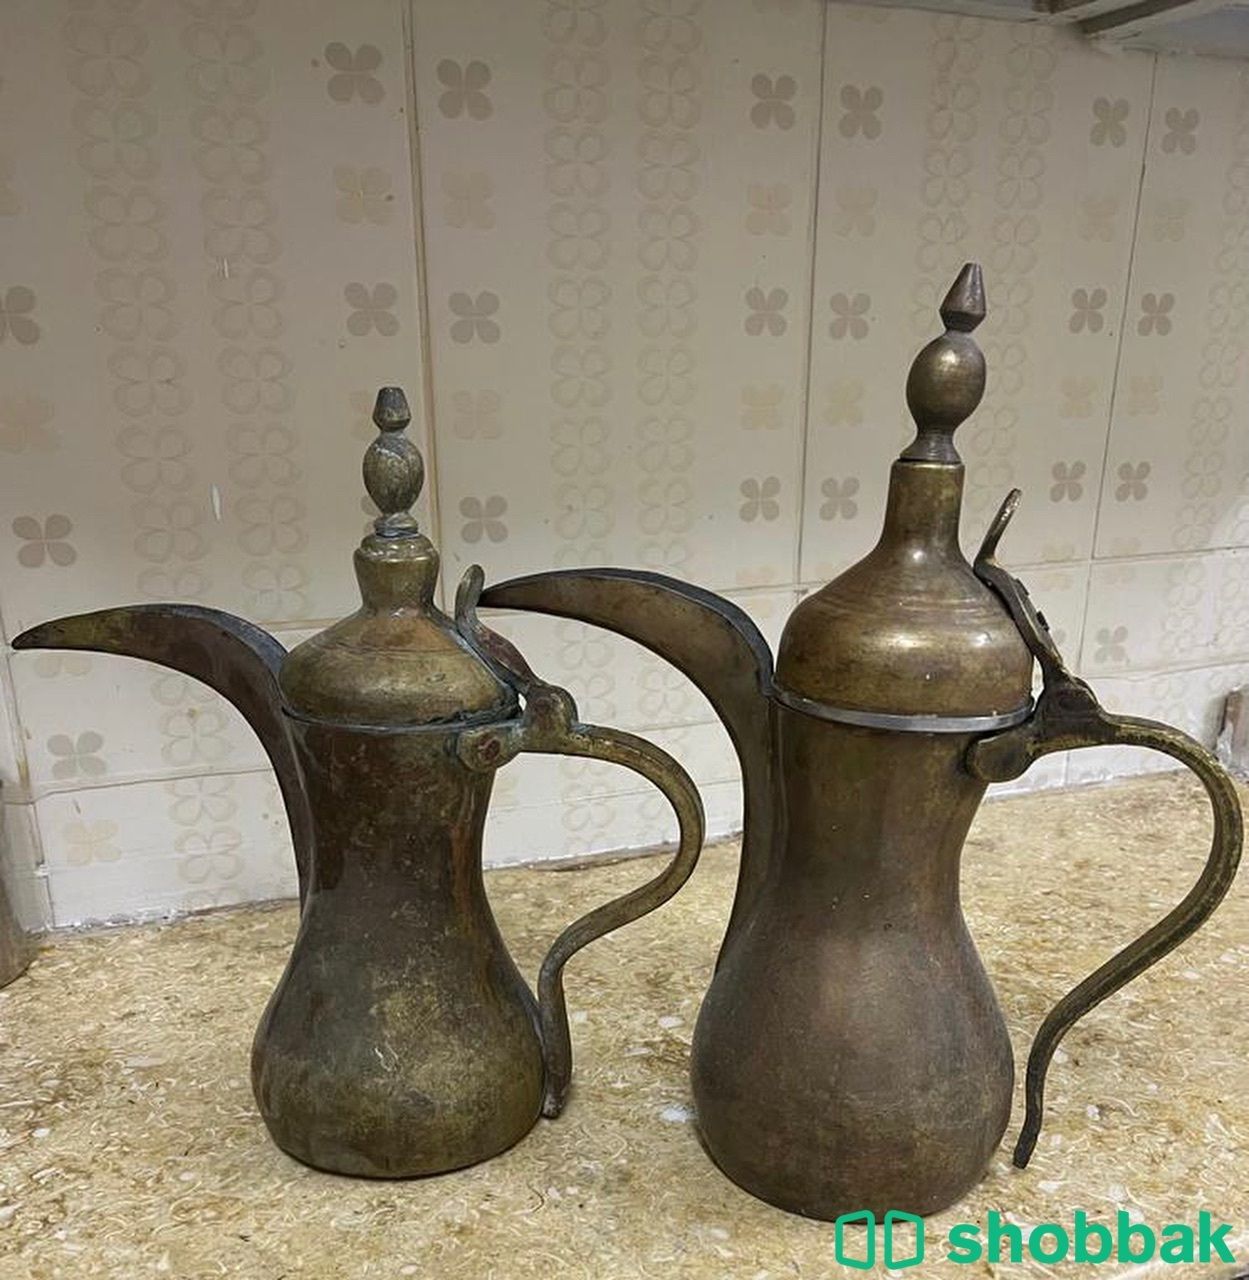 دلال قديمه للبيع Shobbak Saudi Arabia